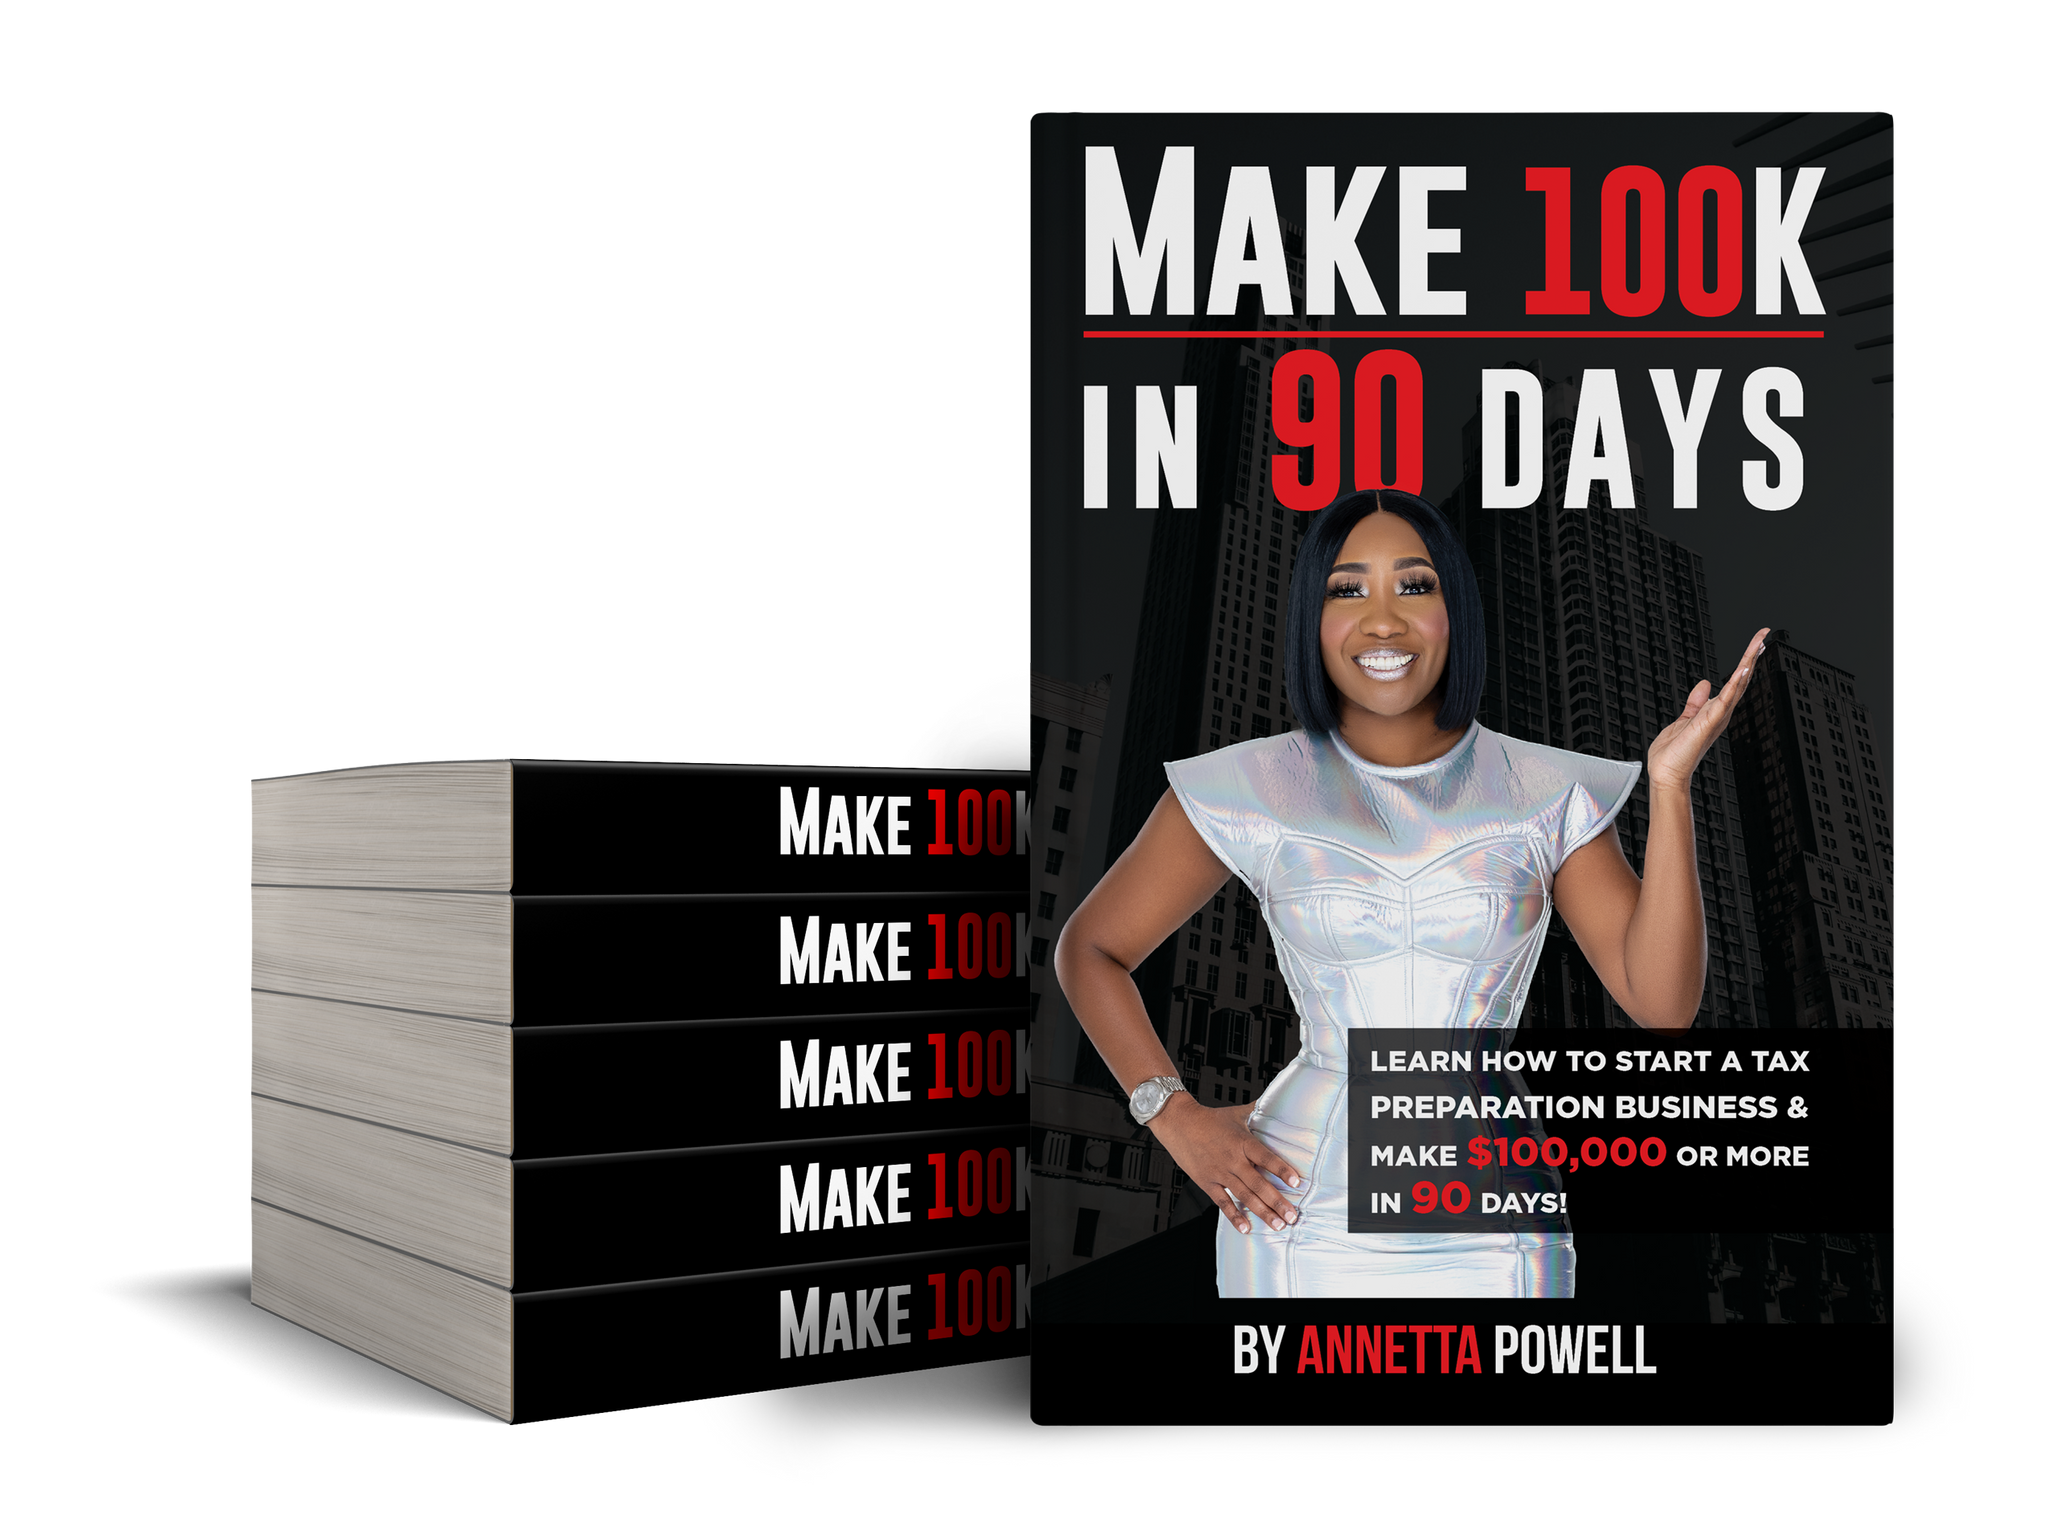 Make $100K in 90 Days